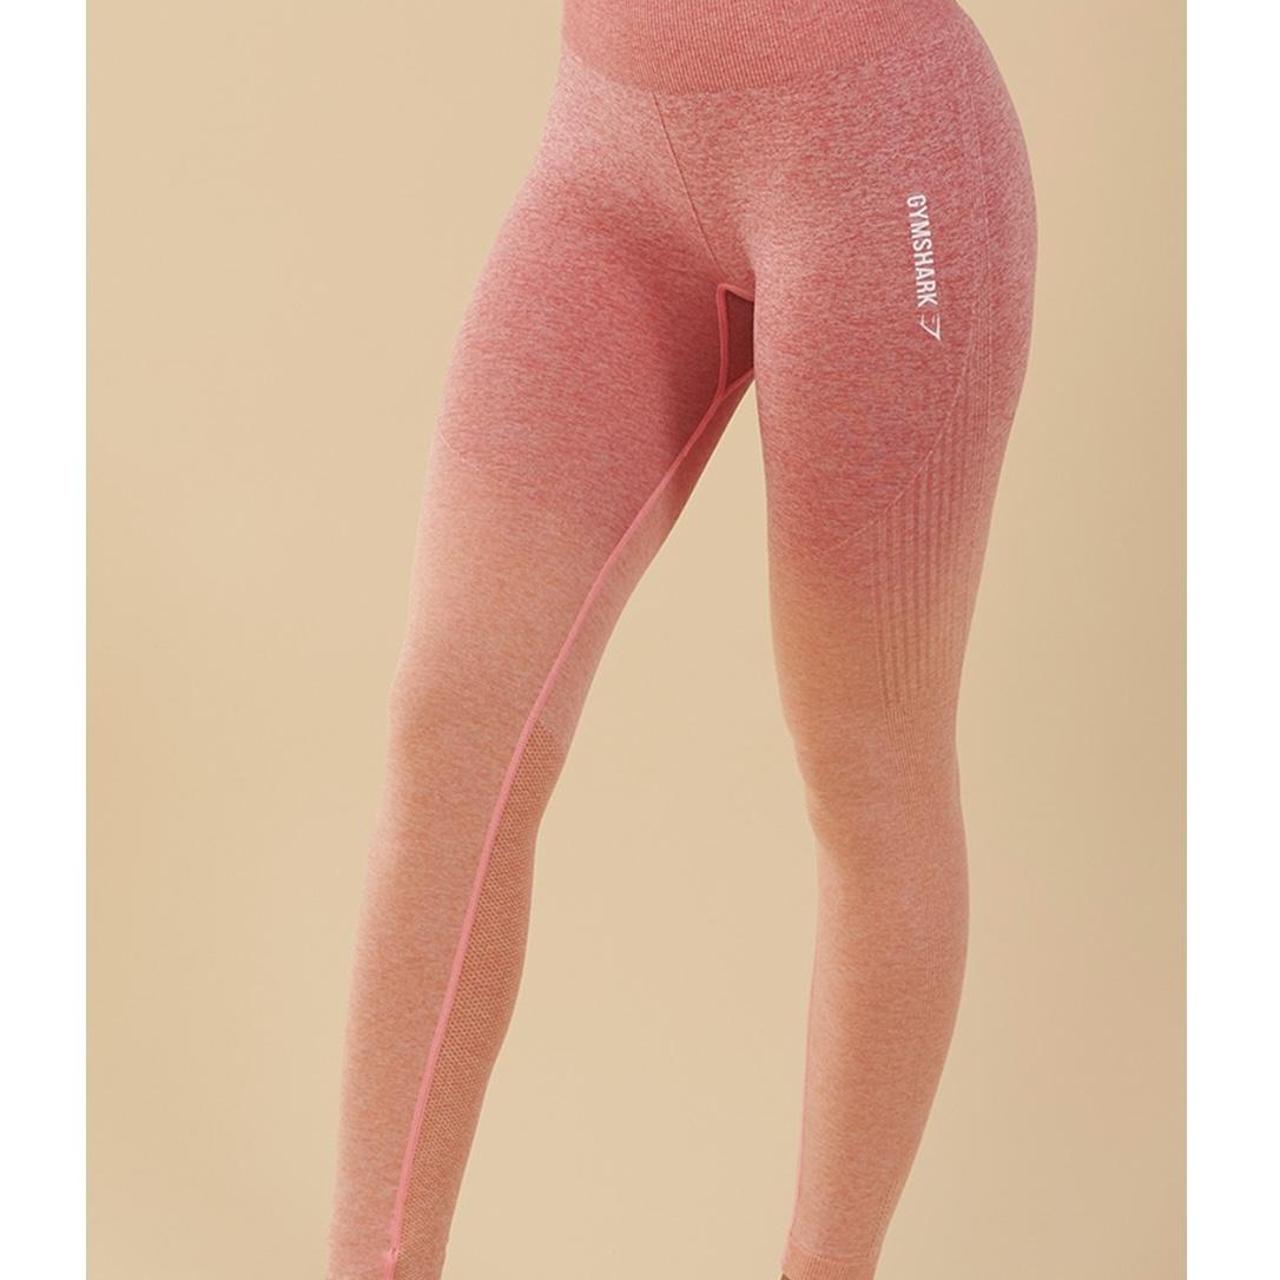 GYMSHARK Pink/Orange Ombré leggings - Depop